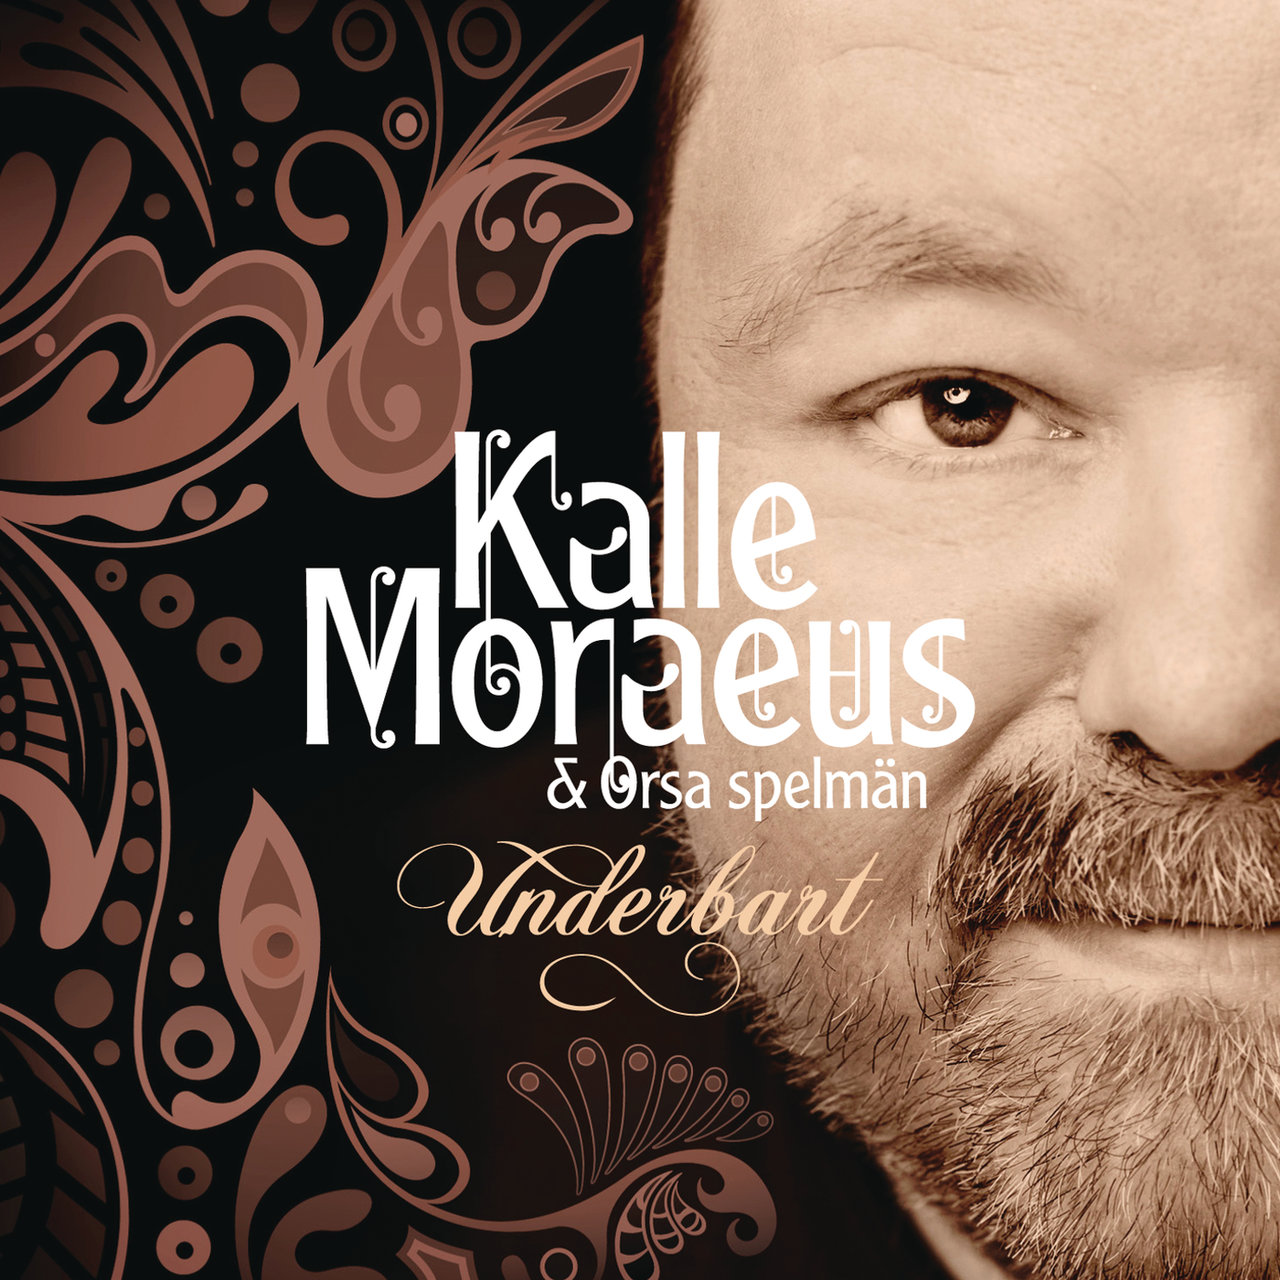 Kalle Moraeus & Orsa Spelmän — Underbart cover artwork